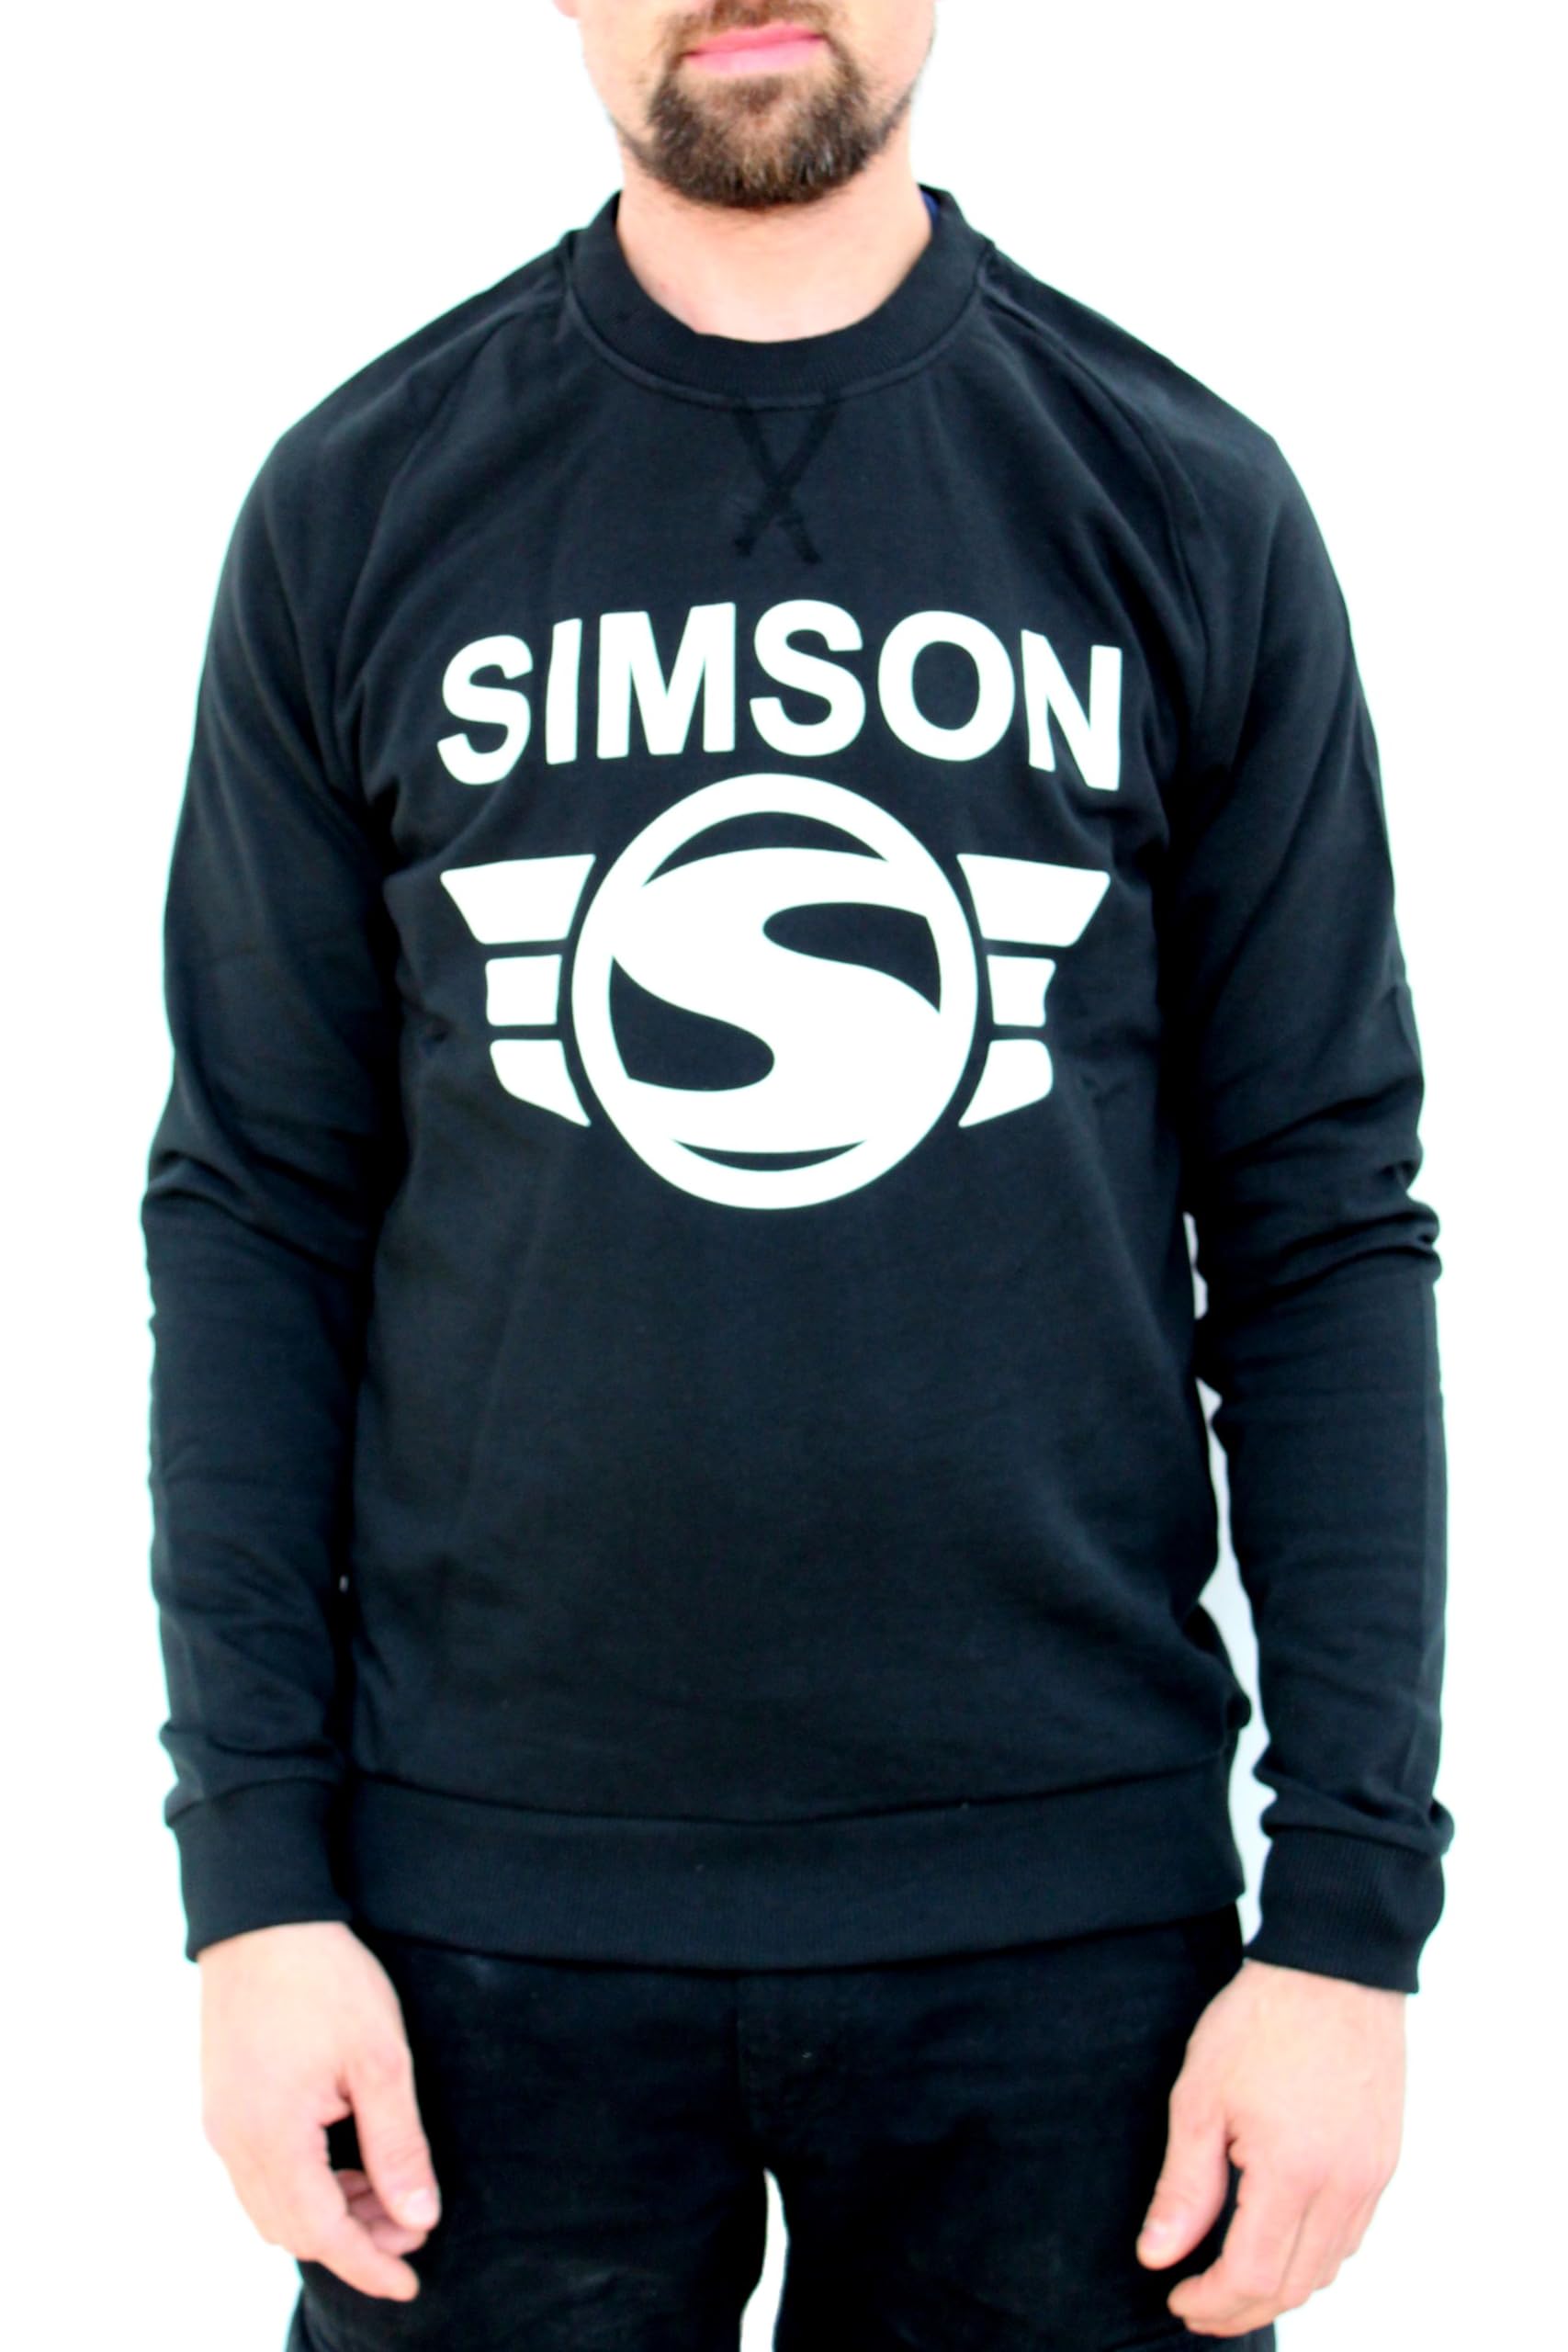 Simson Sweatshirt, schwarz mit Logo, 100% Baumwolle, original MZA Fan-Artikel, Größen: XS bis XXXL, Größe:XXL von MZA